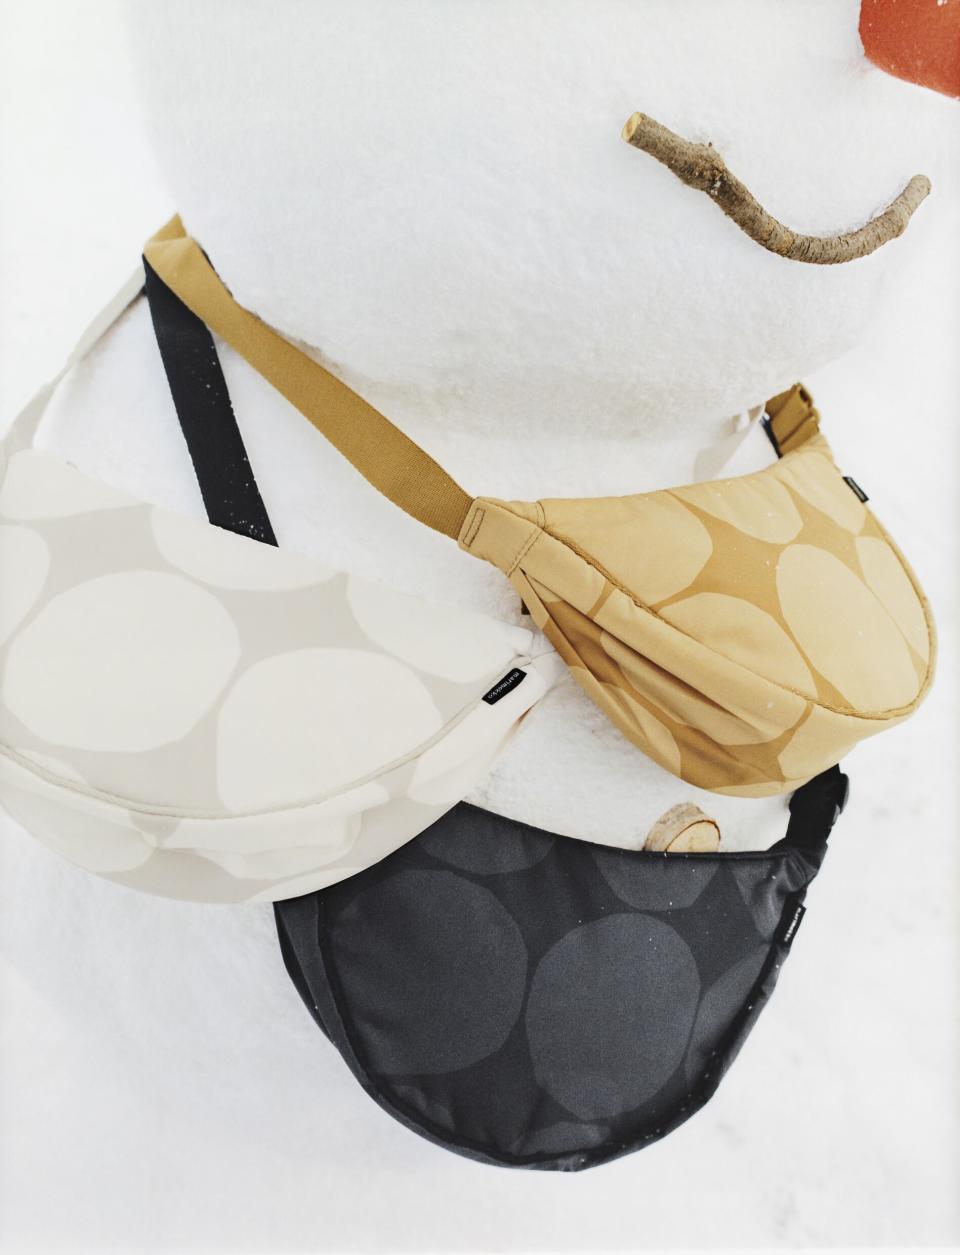 Handbags in the Marimekko x Uniqlo collaboration.